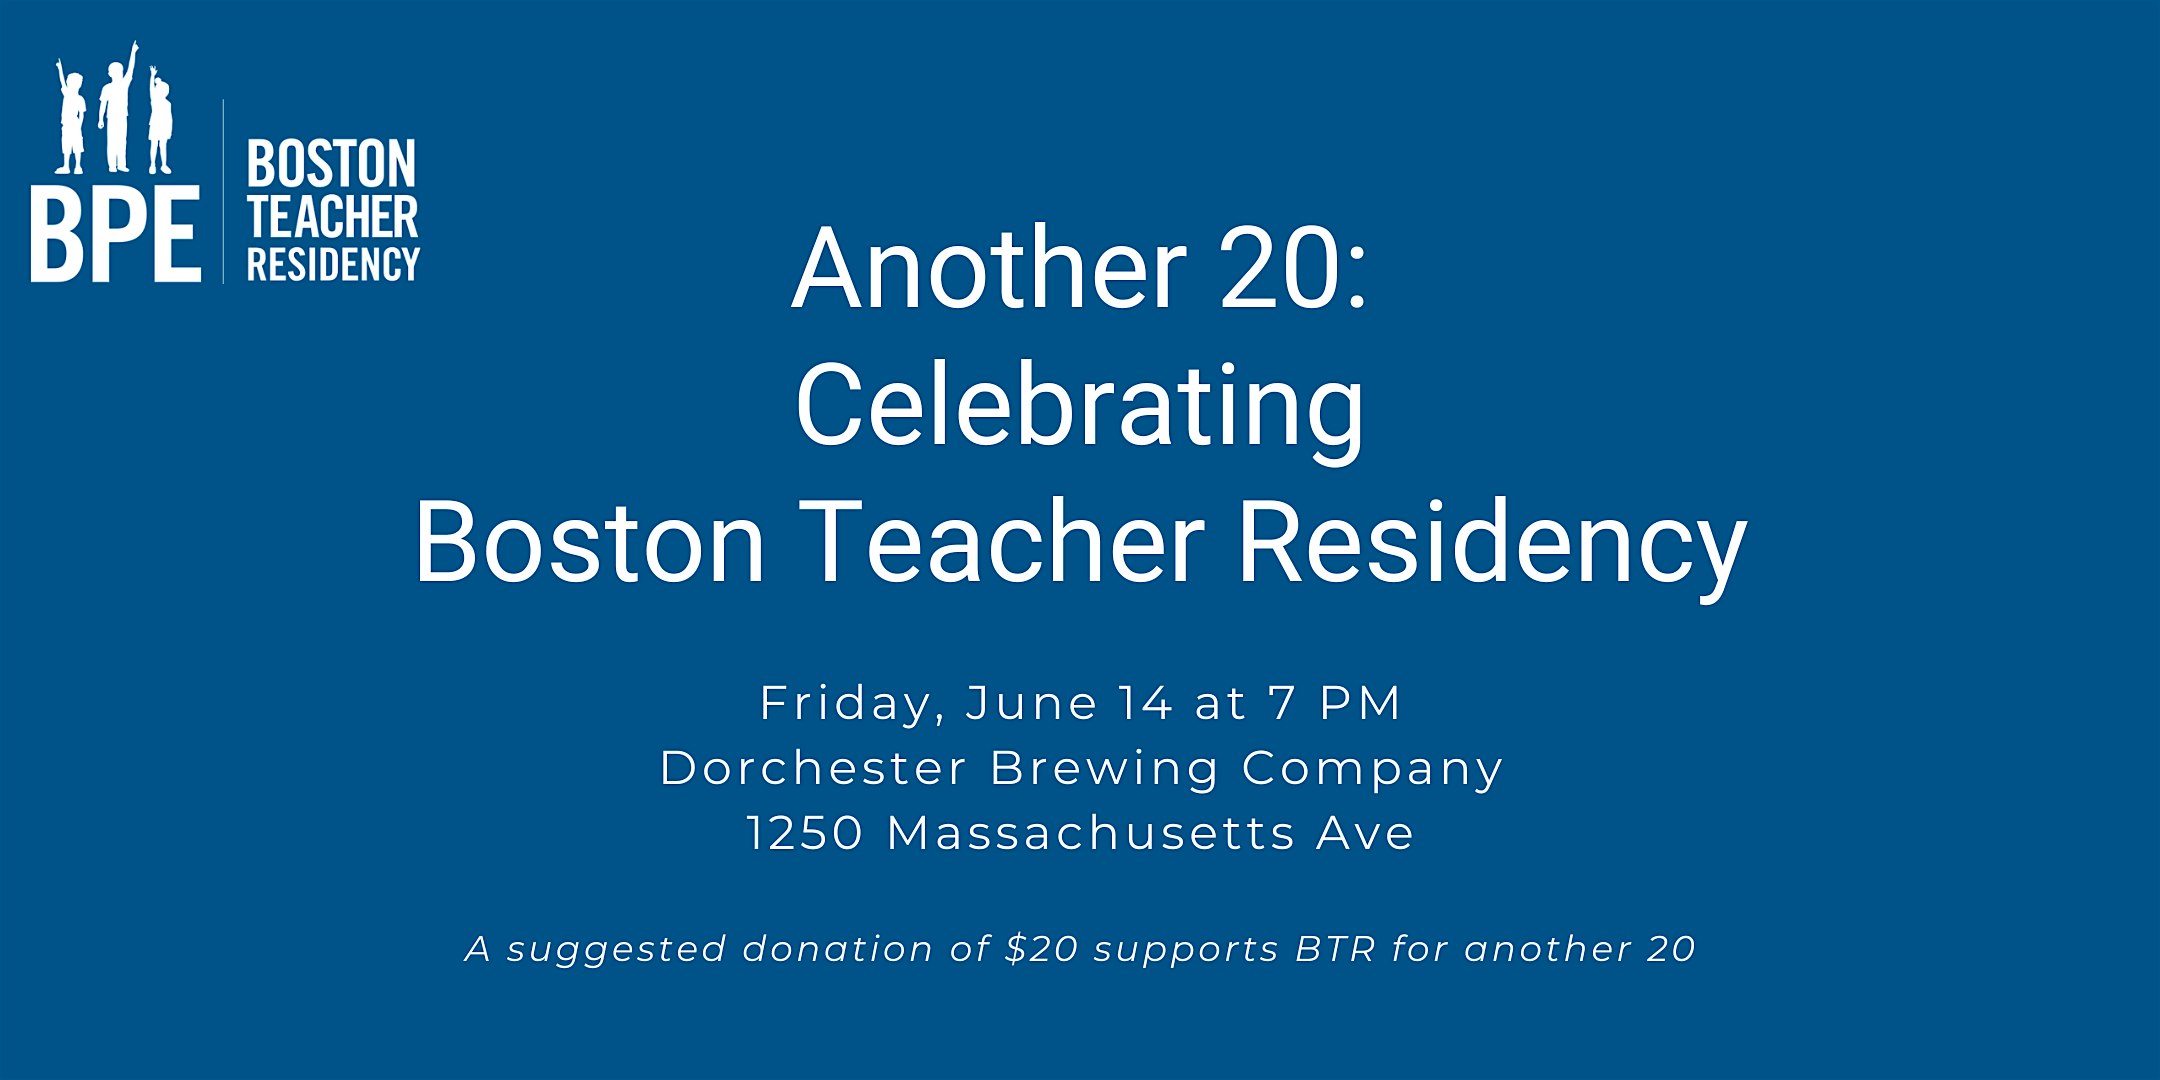 Another 20: Celebrating Boston Teacher Residency